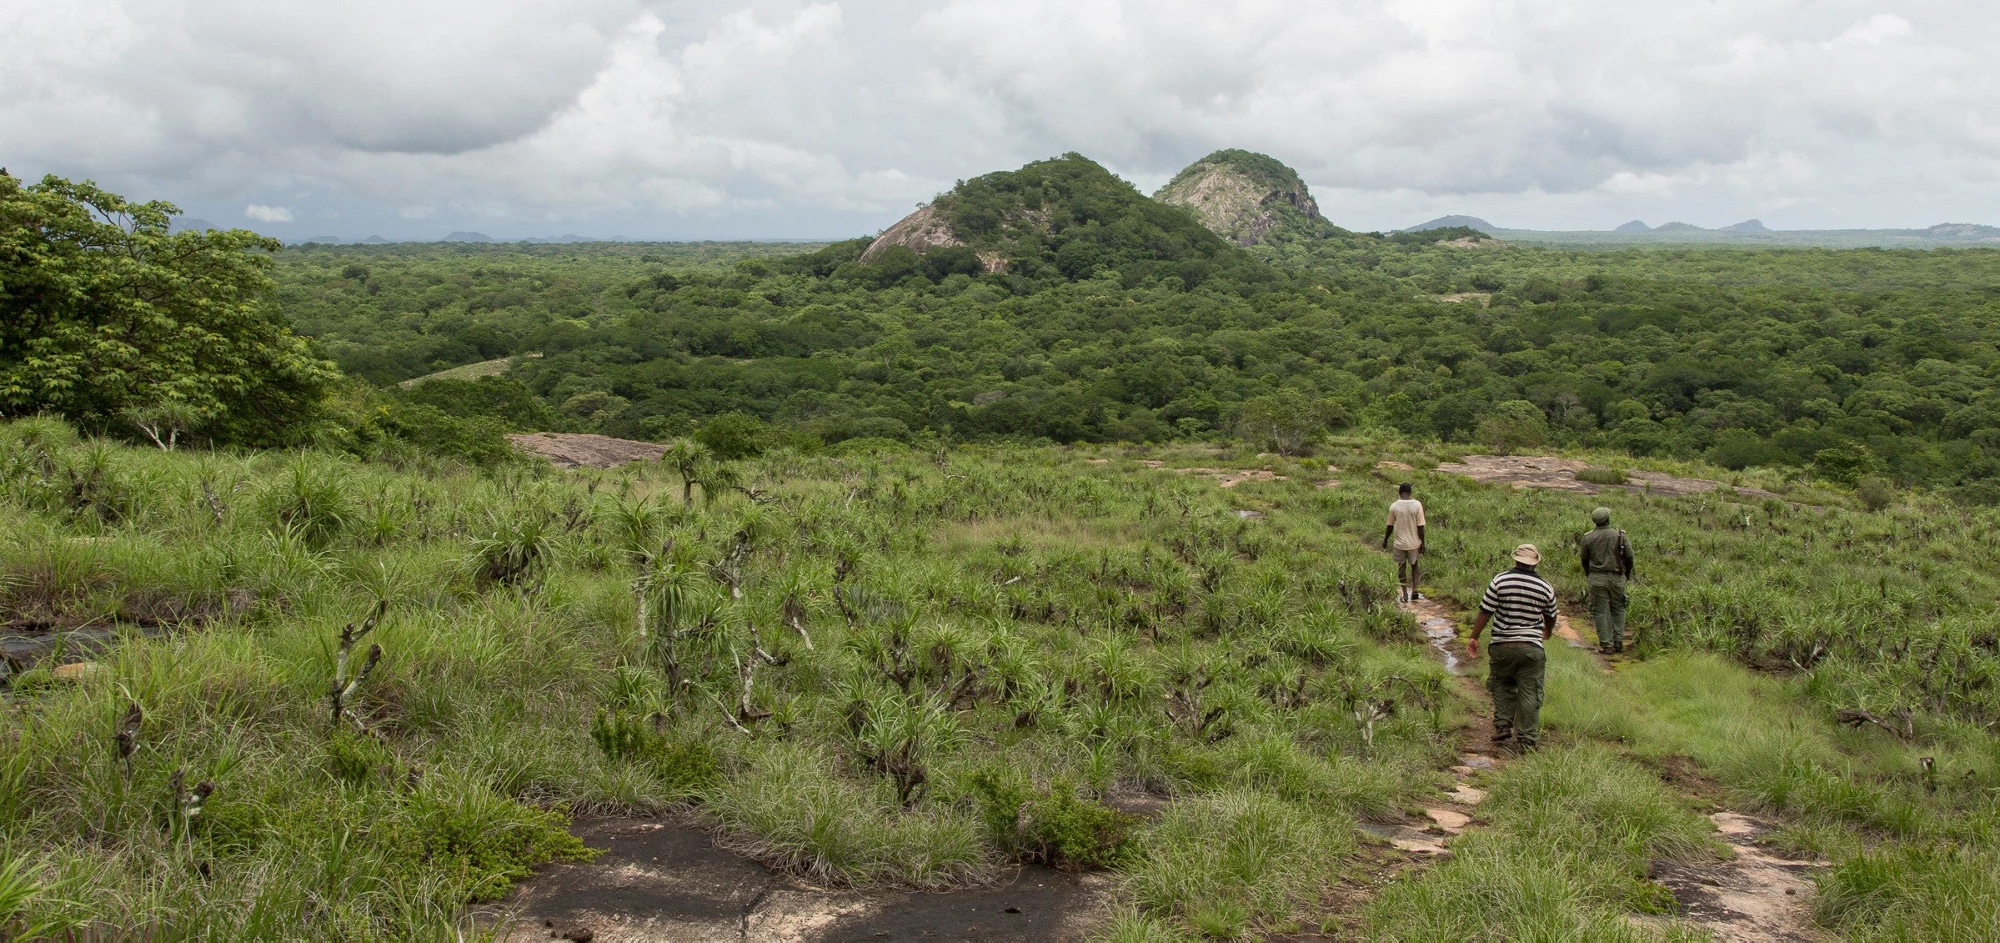 Quirimbas National Park, Mozambique. Photo: © Andrea Borgarello/World Bank